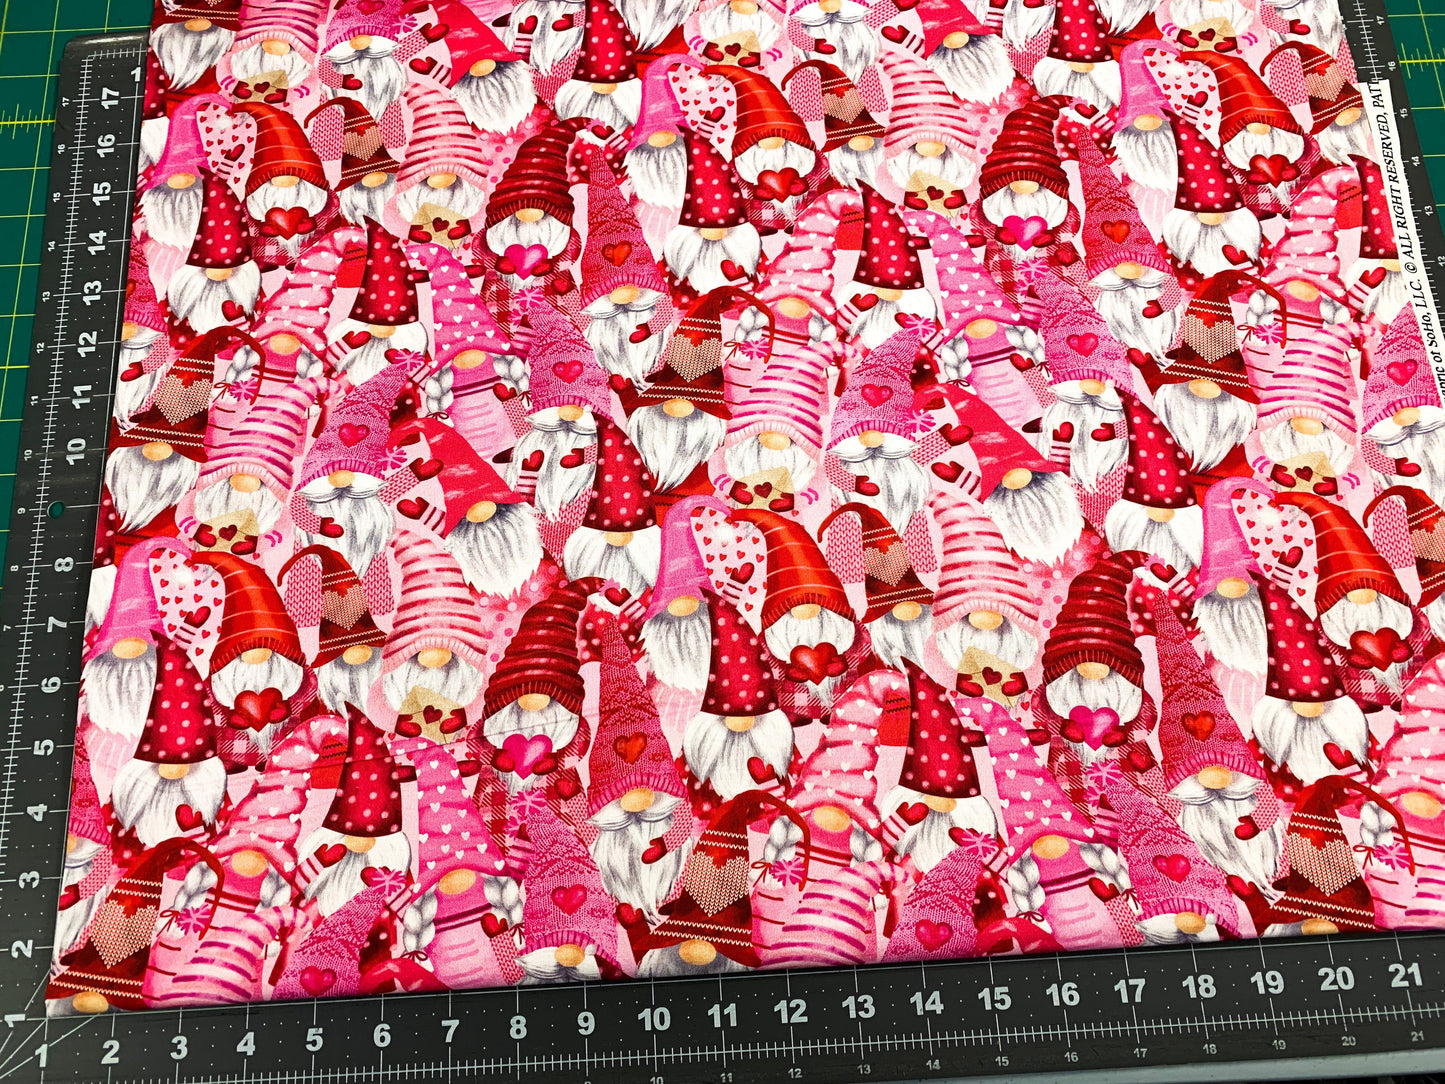 Gnomes fabric Hearts Valentine cotton fabric